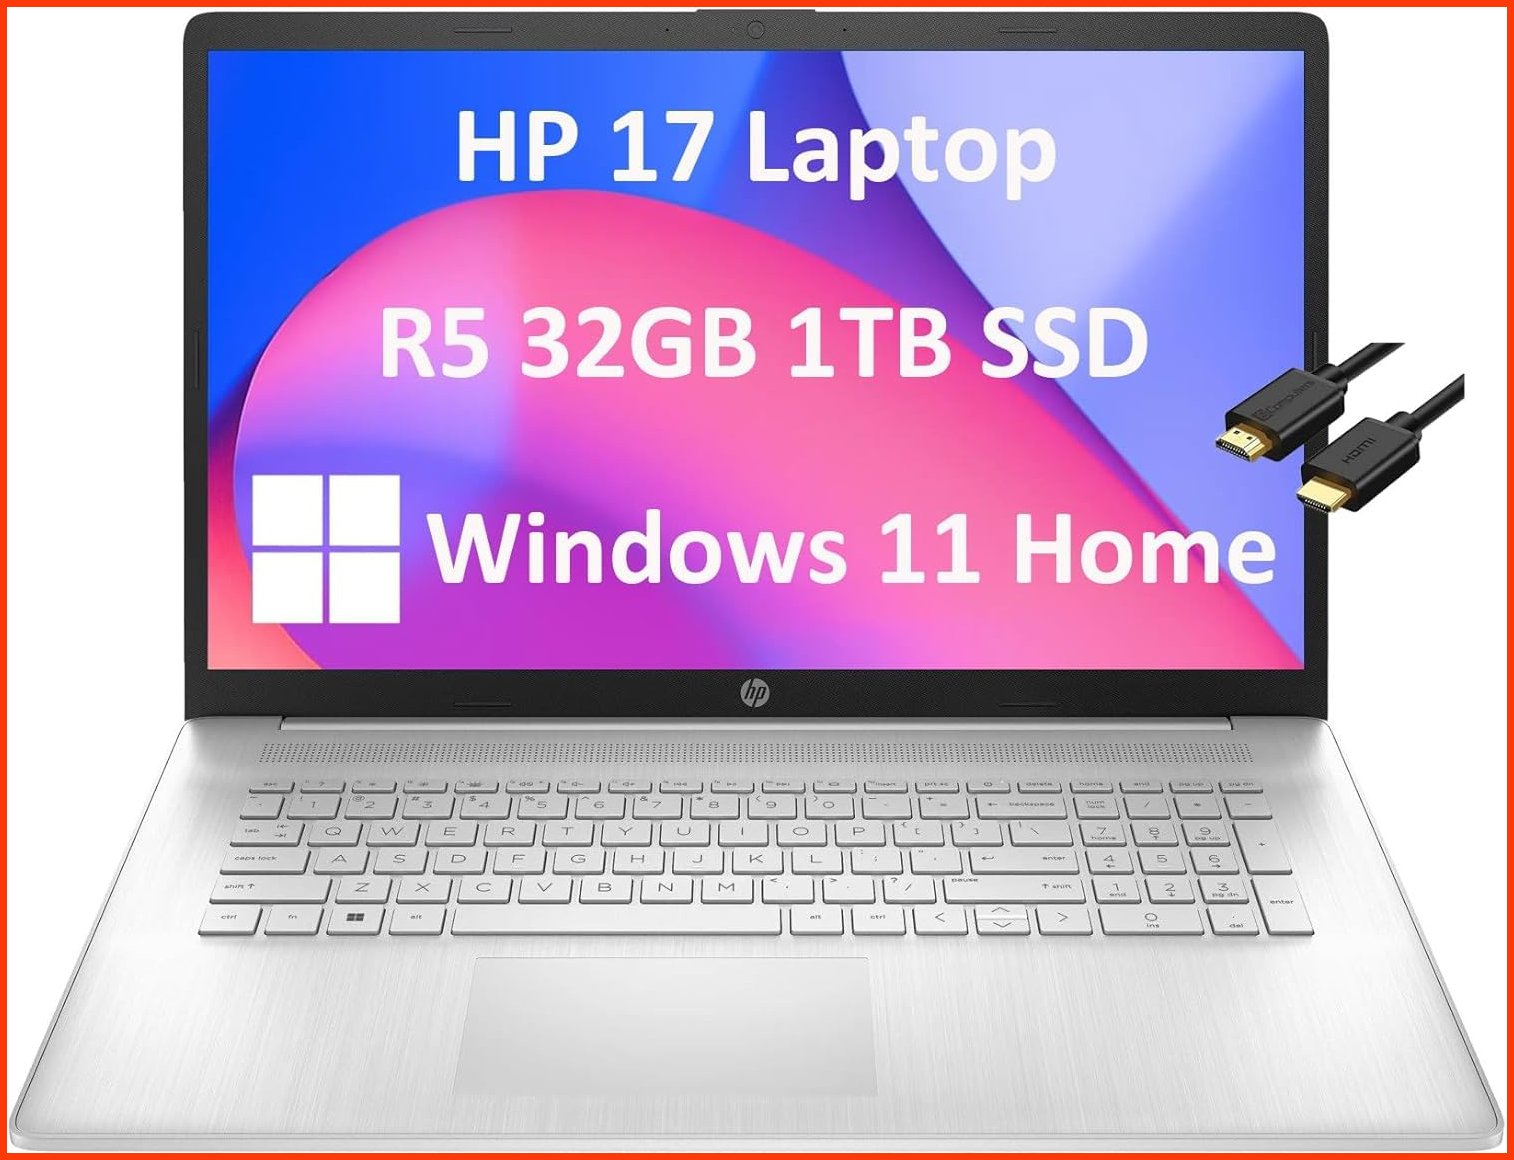 並行輸入品HP 17 Laptop 17.3 FHD Anti-Glare AMD 6-Core Ryzen 5 5500U 32GB RAM 1TB SSD Narrow Bezel Home Business